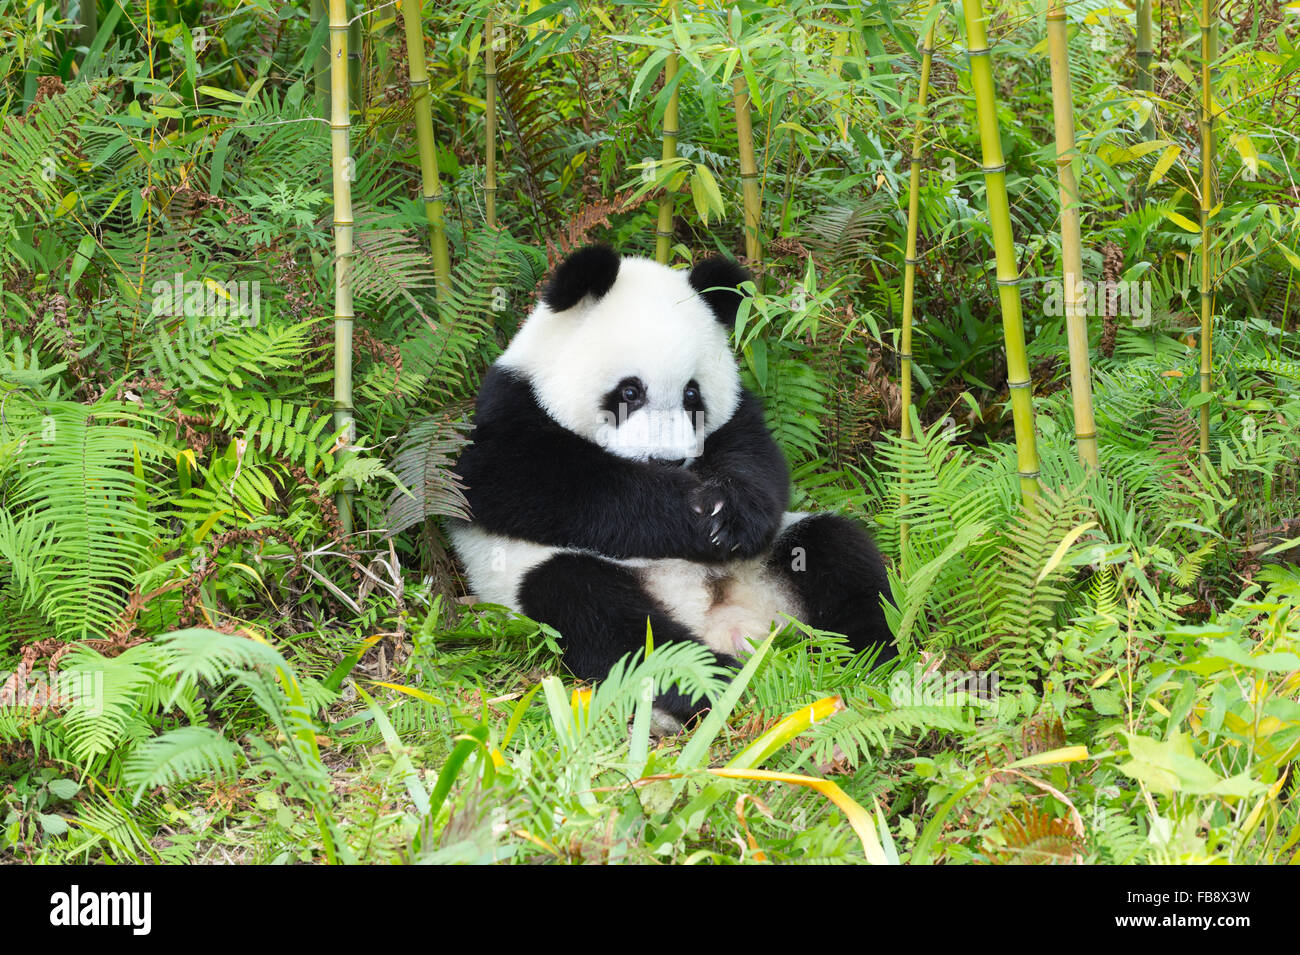 Dos años entre los jóvenes el panda gigante (Ailuropoda melanoleuca), China y el Centro de Investigación de la conservación de los Pandas Gigantes, Chengdu, Foto de stock